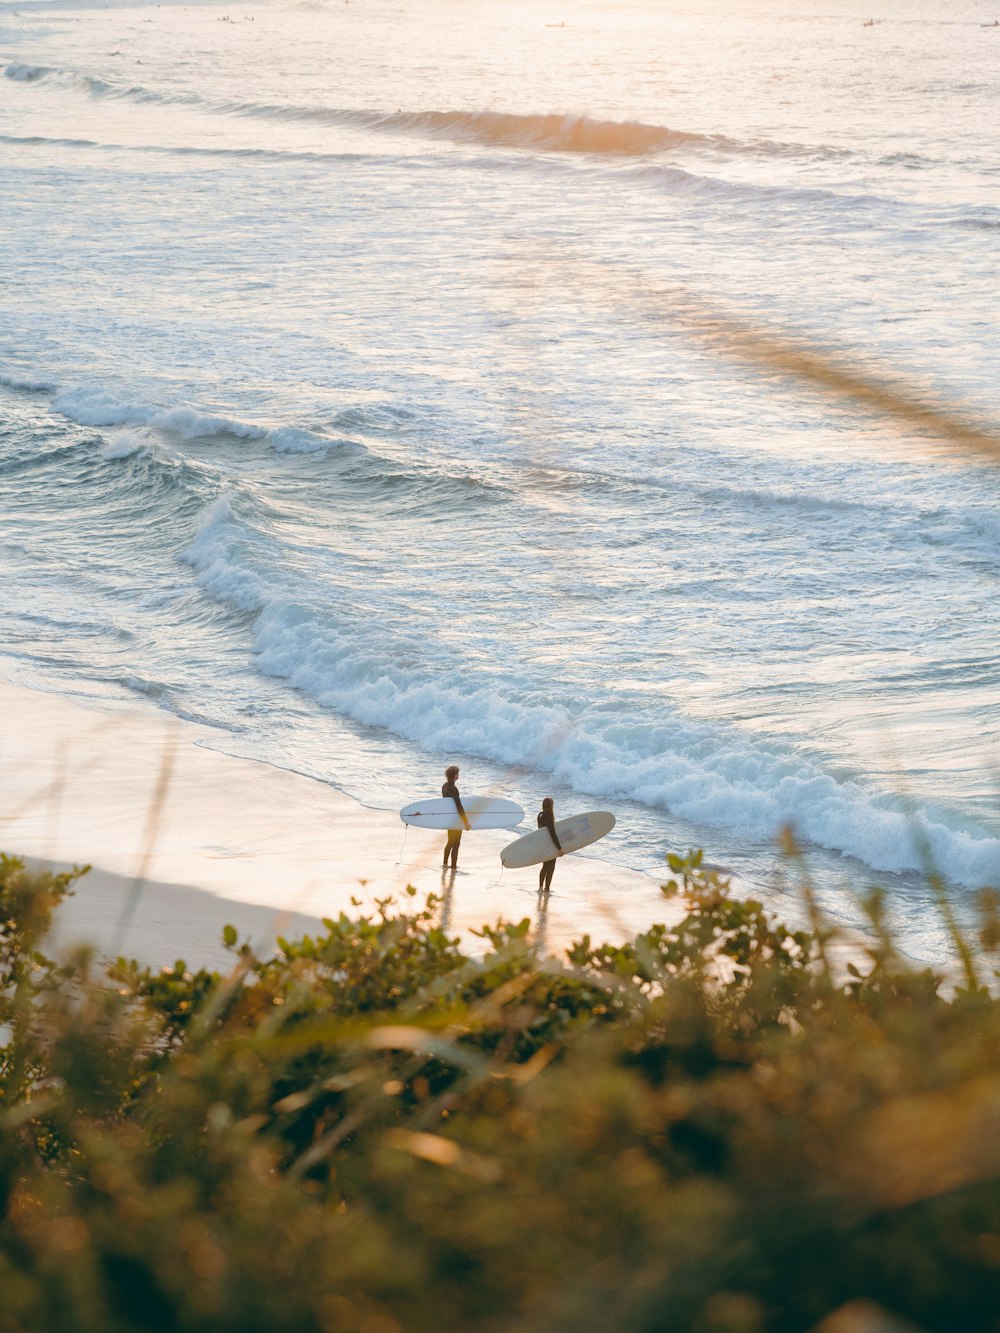 Zwei Leute mit Surfbrettern an einem Strand am Meer